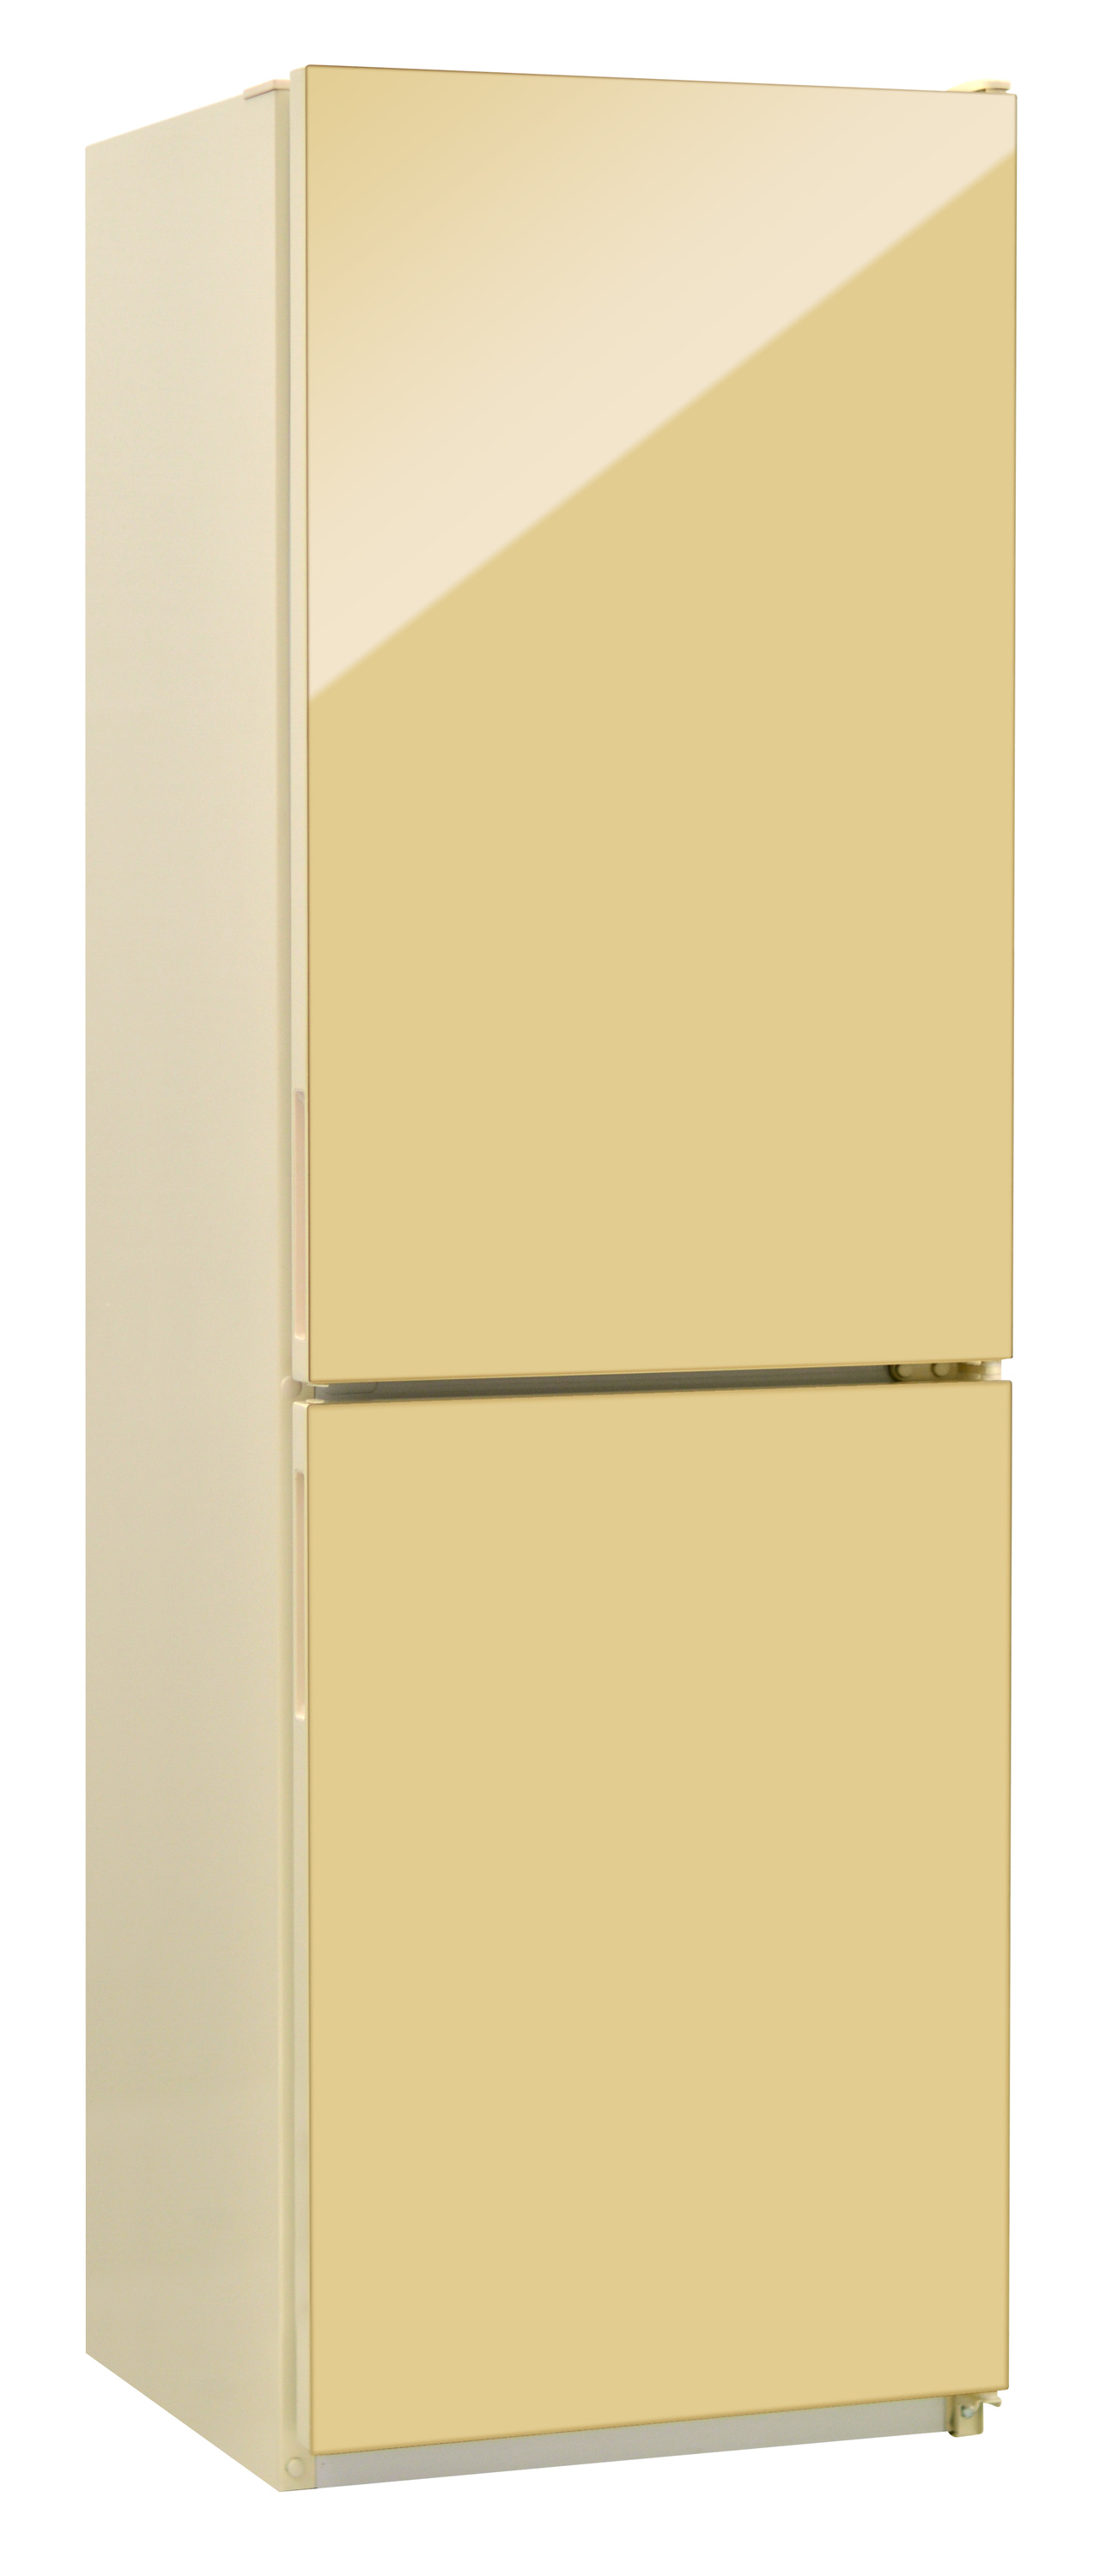 Холодильник NORD NRG 119 742